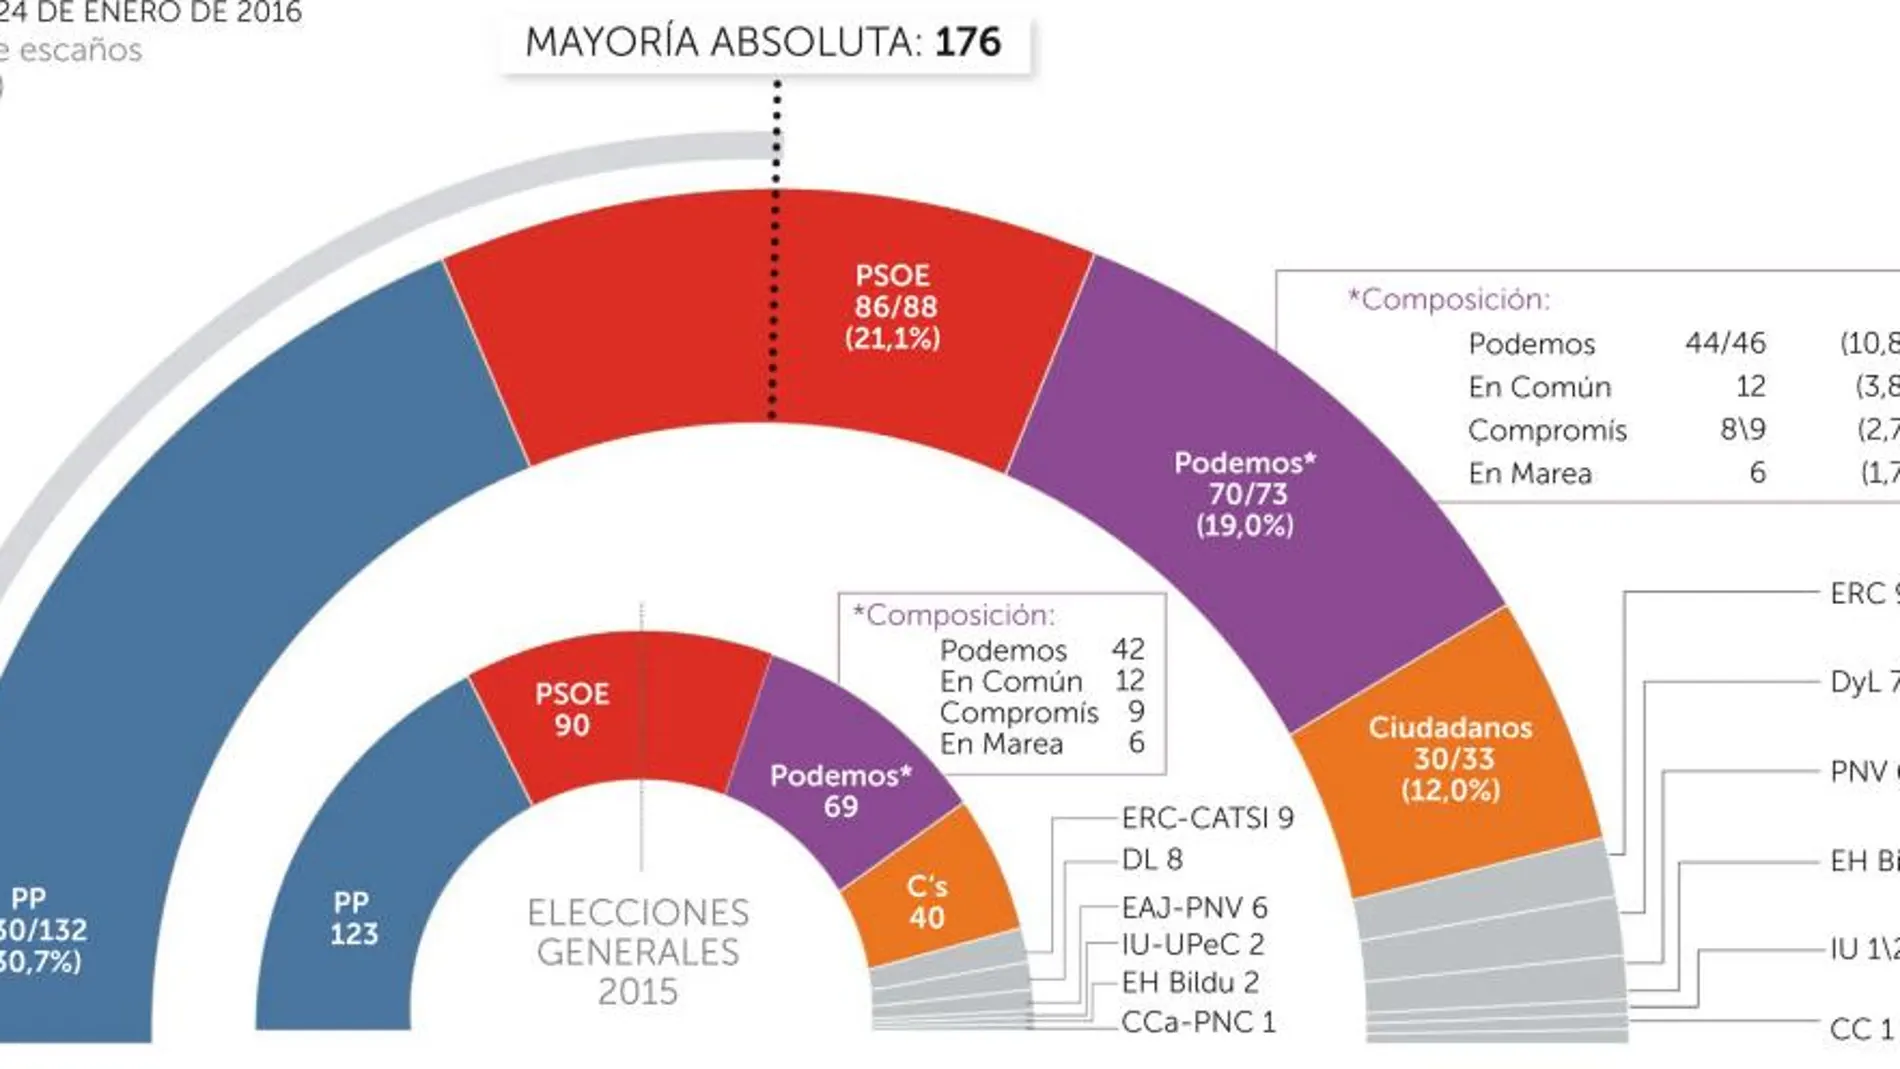 El PP subiría 9 escaños y Podemos 4 si se repitieran las elecciones